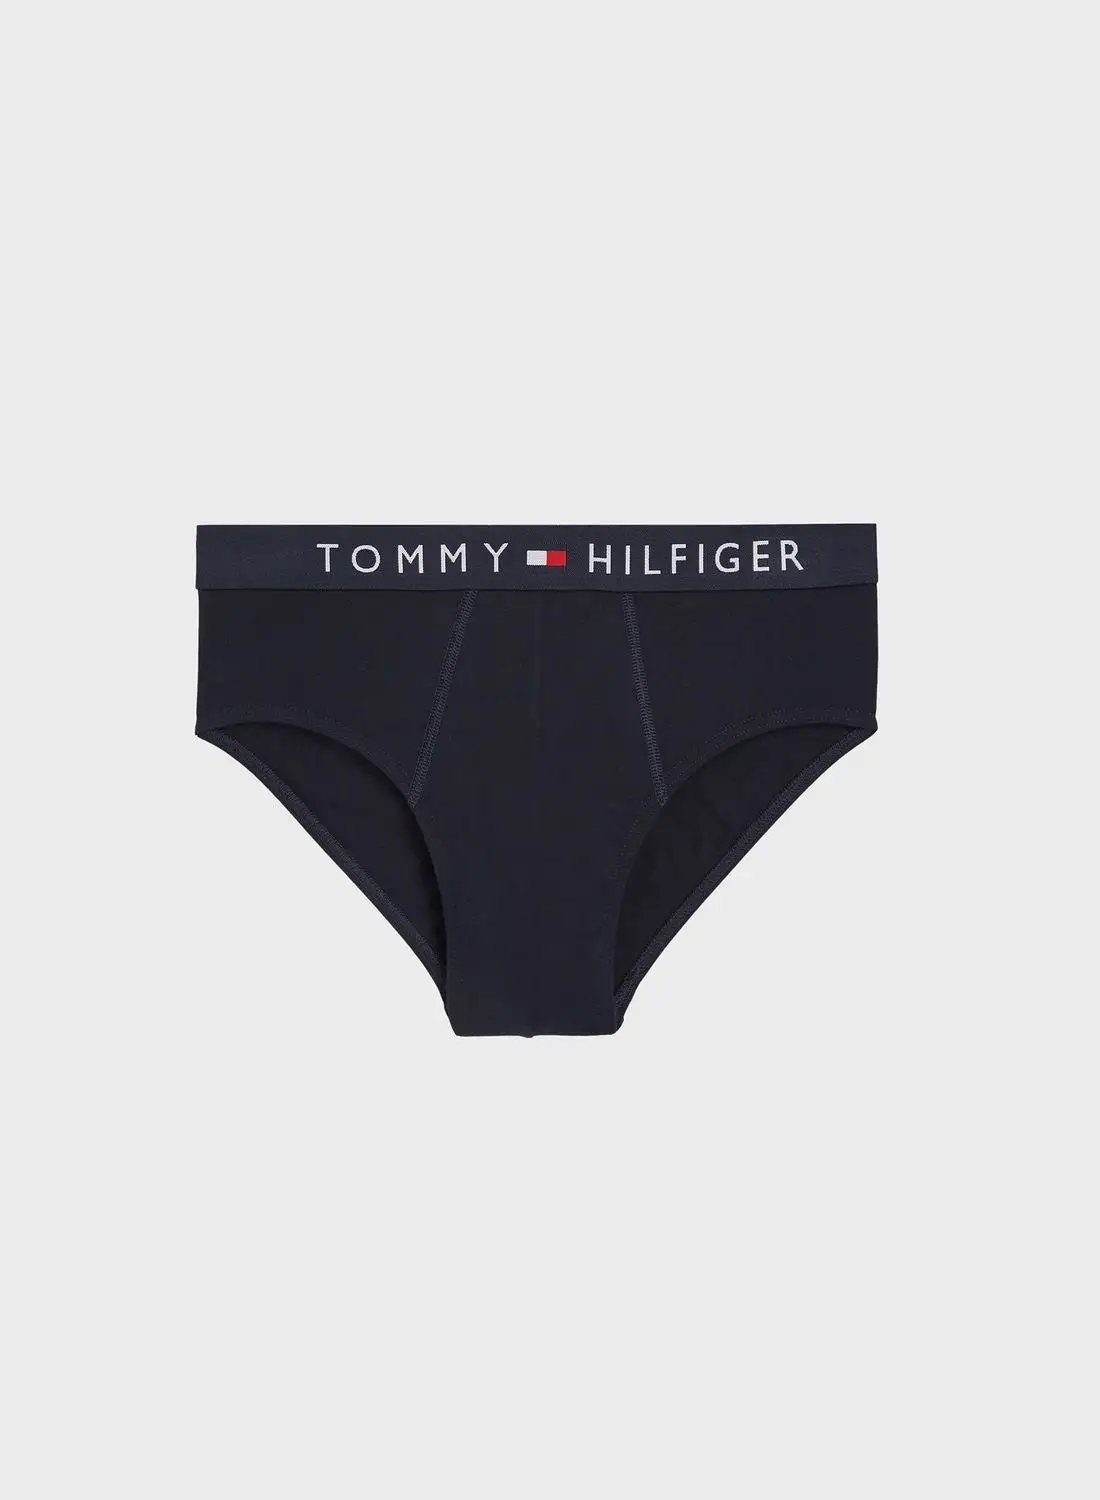 TOMMY HILFIGER Printed Trunks & Sock Set